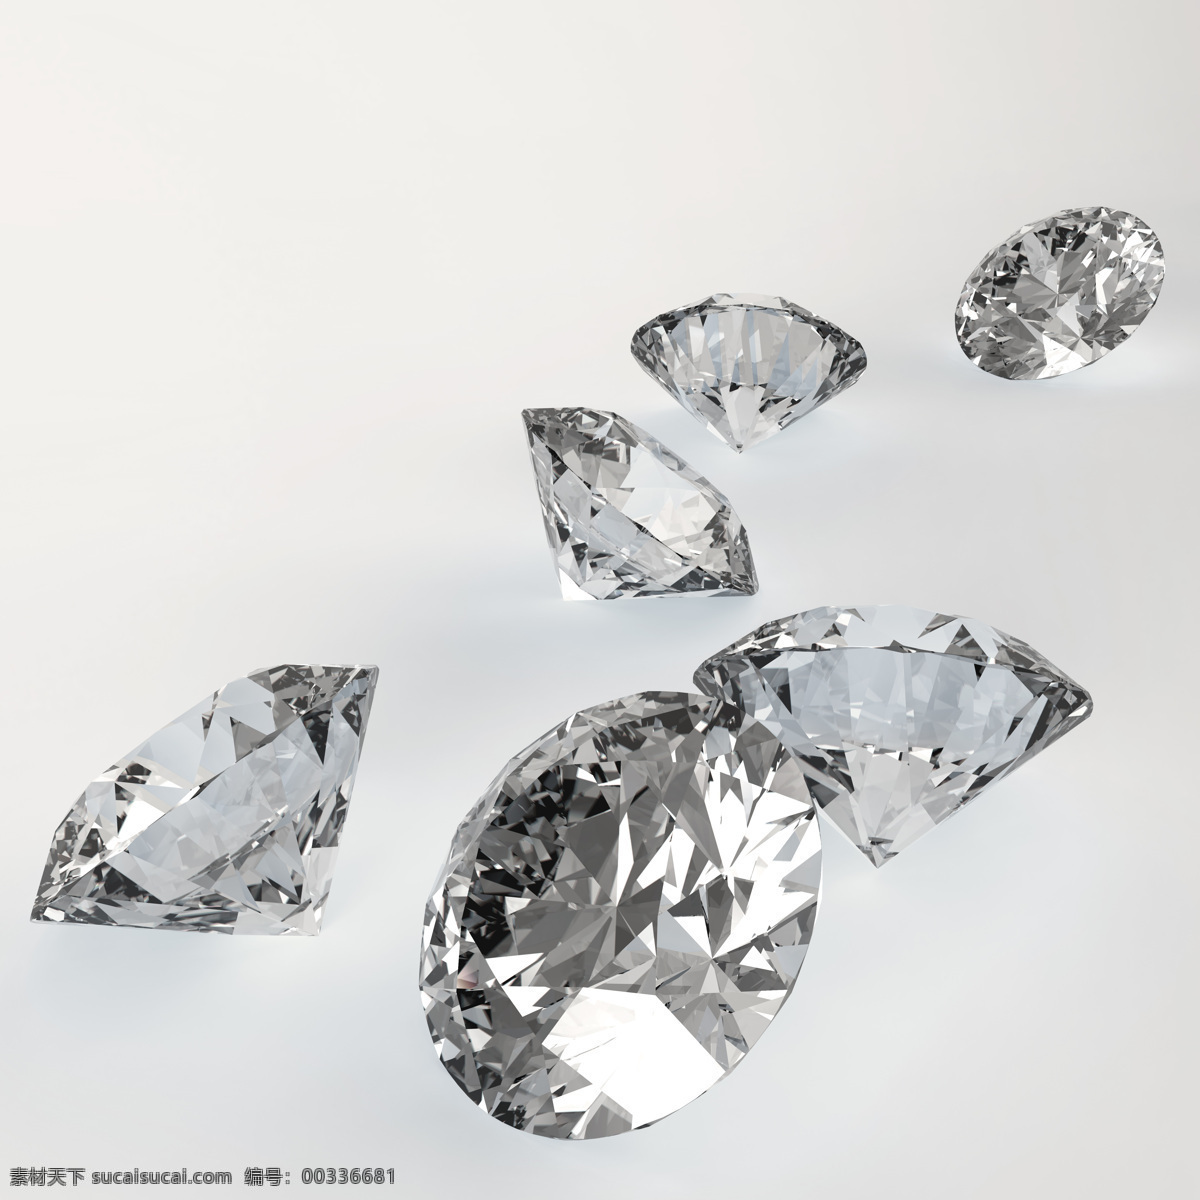 灰色 钻石 背景 素材图片 灰色钻石 水晶 钻石摄影 钻石素材 珠宝 饰品 首饰 珠宝服饰 生活百科